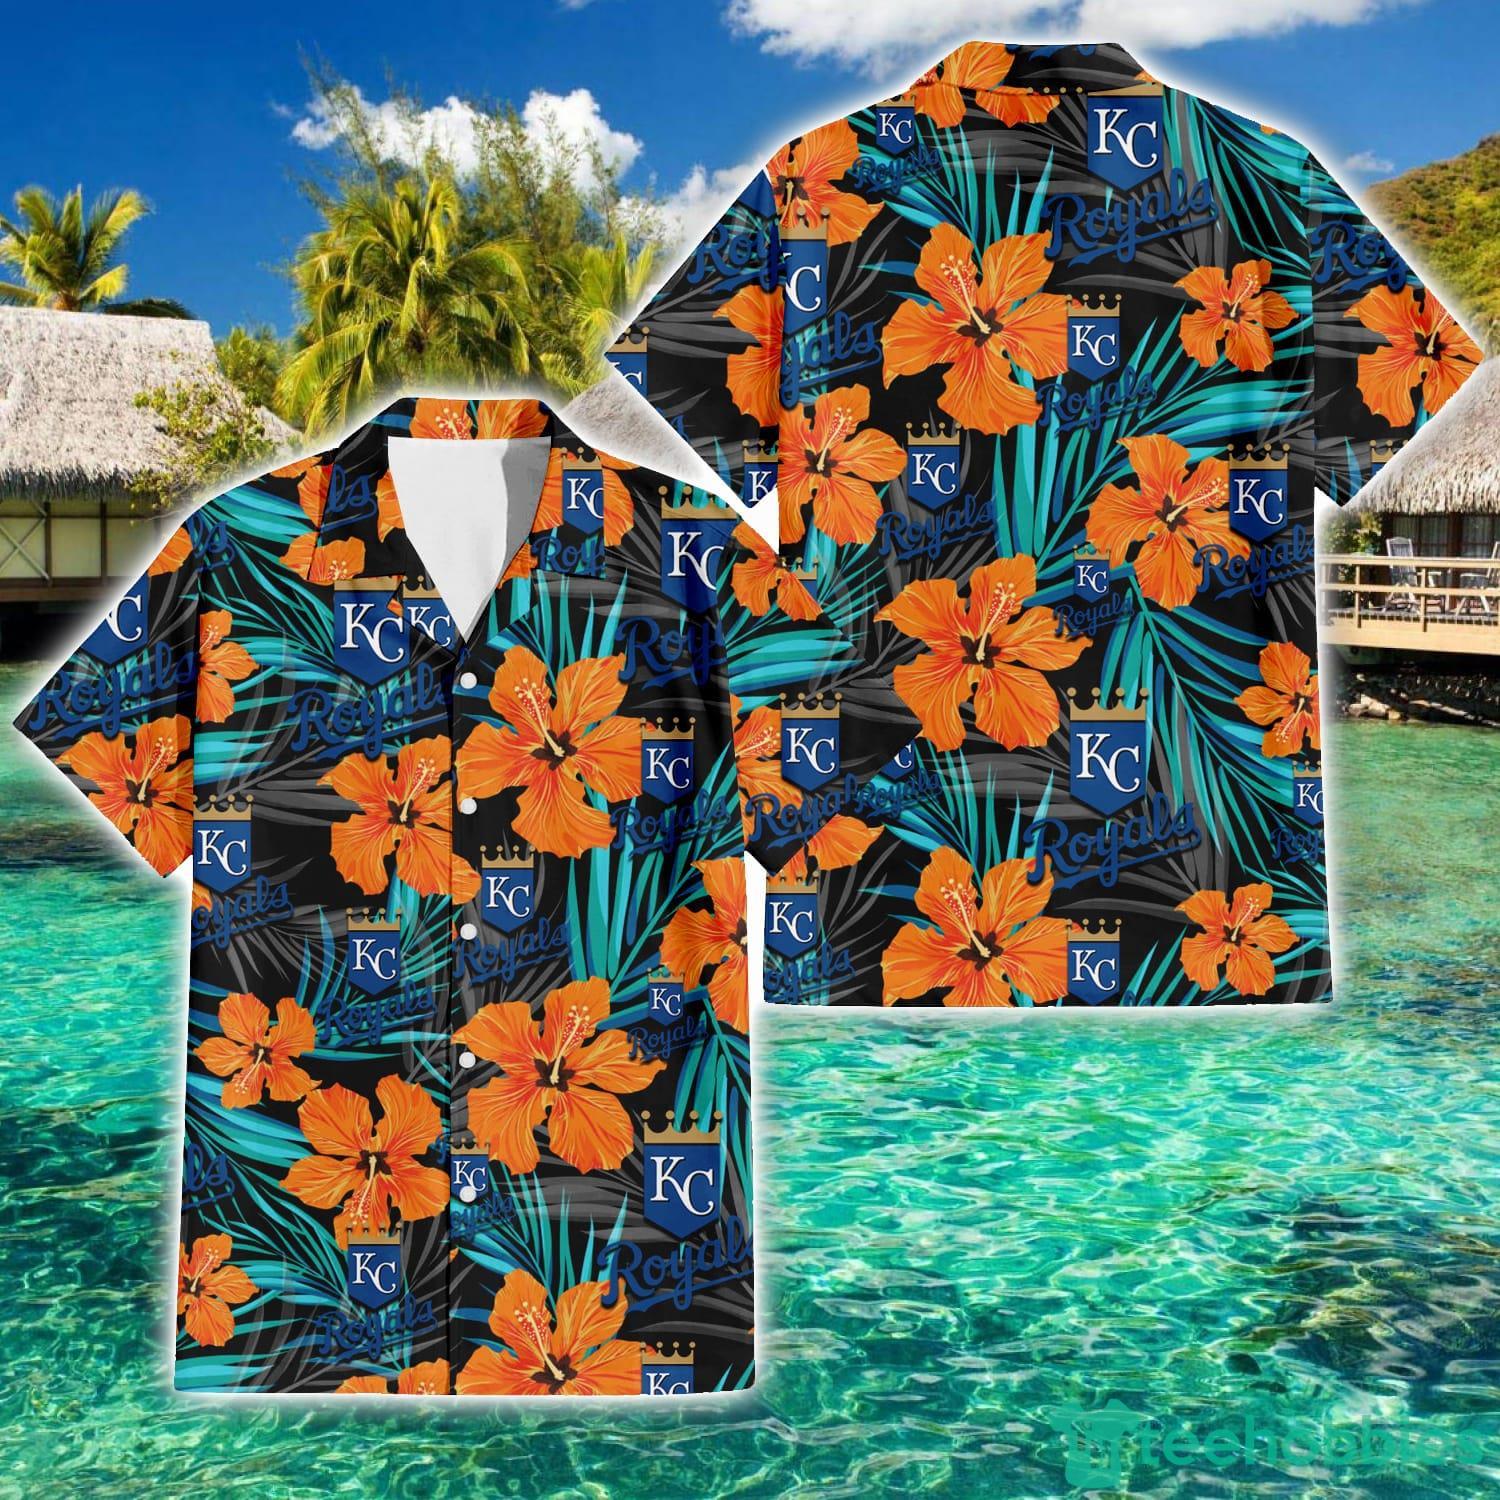 royals hawaiian shirt 2021